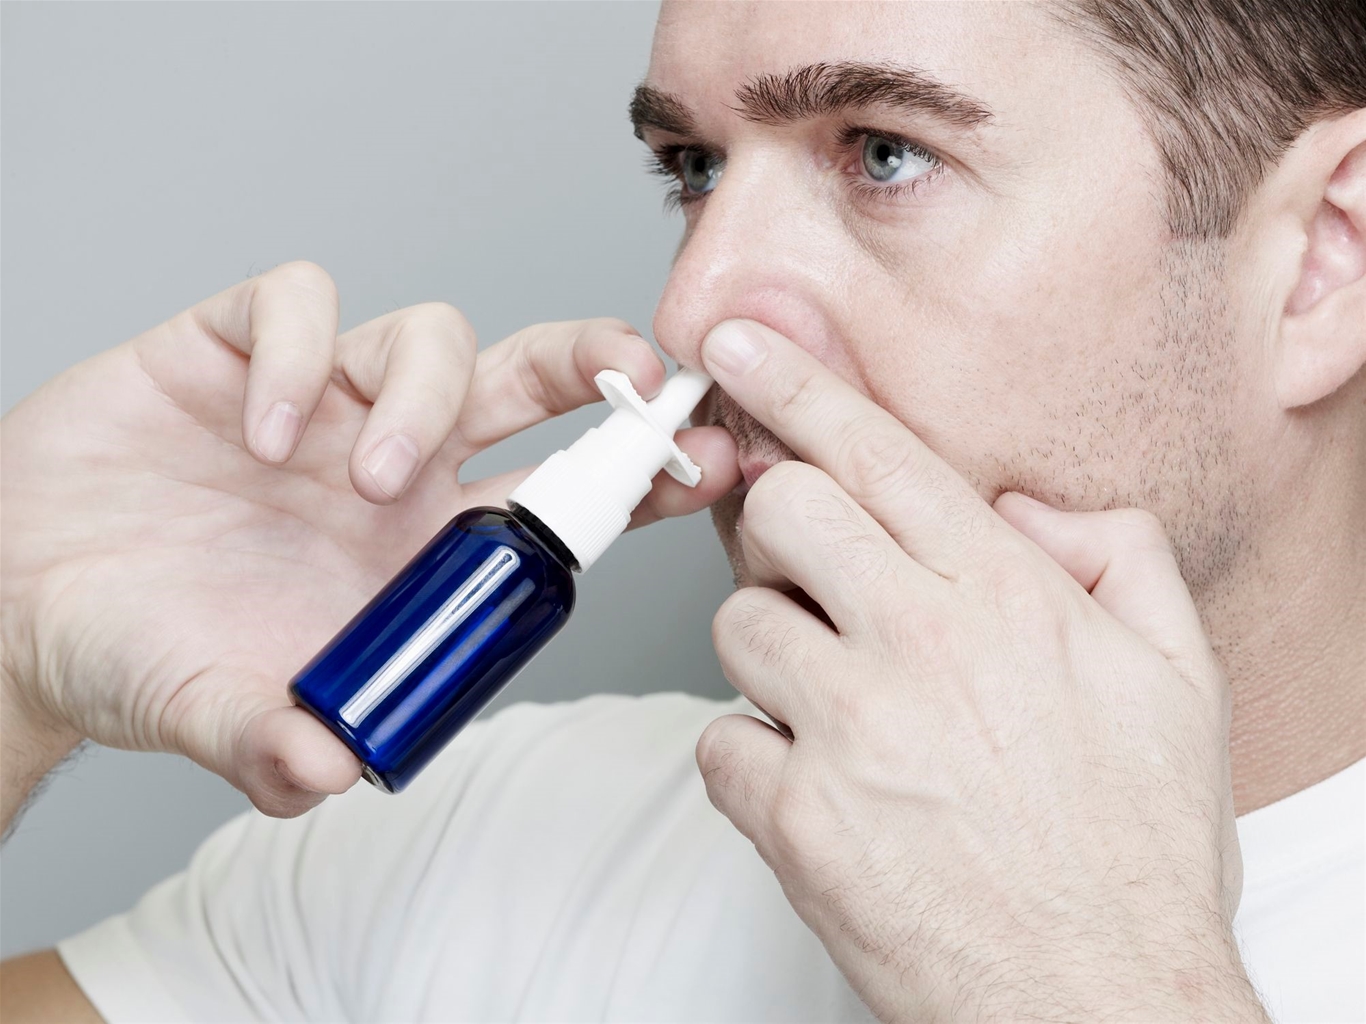 Xịt rửa mũi là biện pháp hiệu quả để phòng ngừa và hỗ trợ điều trị viêm mũi xoang